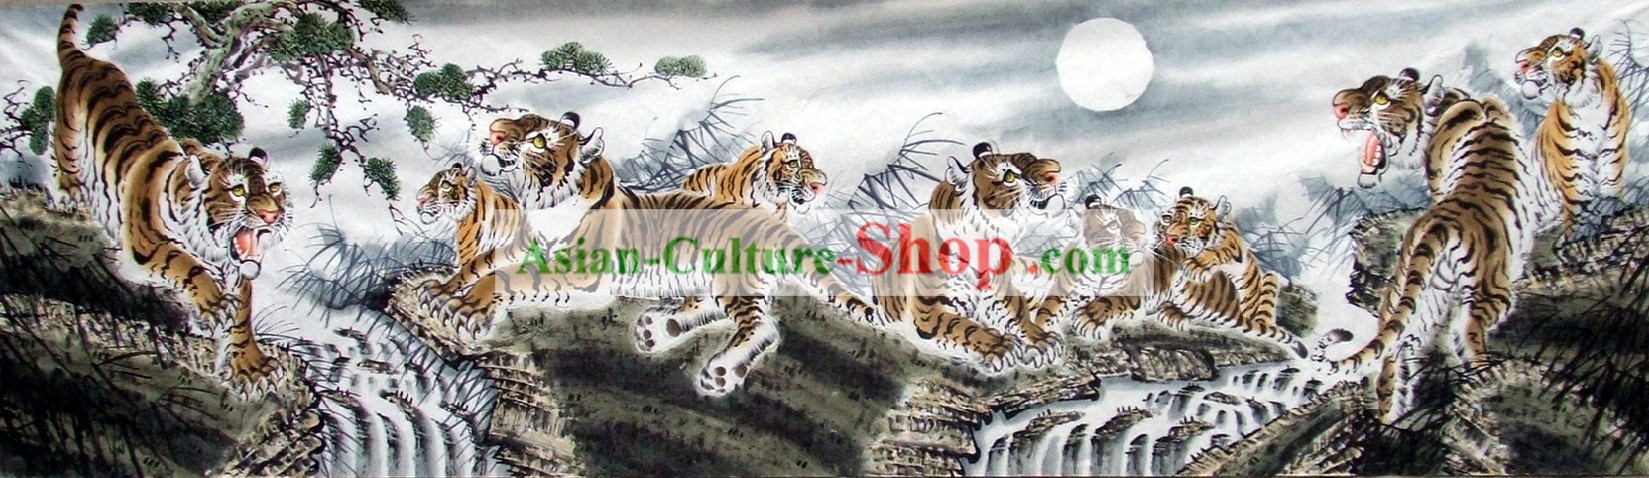 Re Tigre cinese tradizionale pittura Famiglia da Wang Yongchang